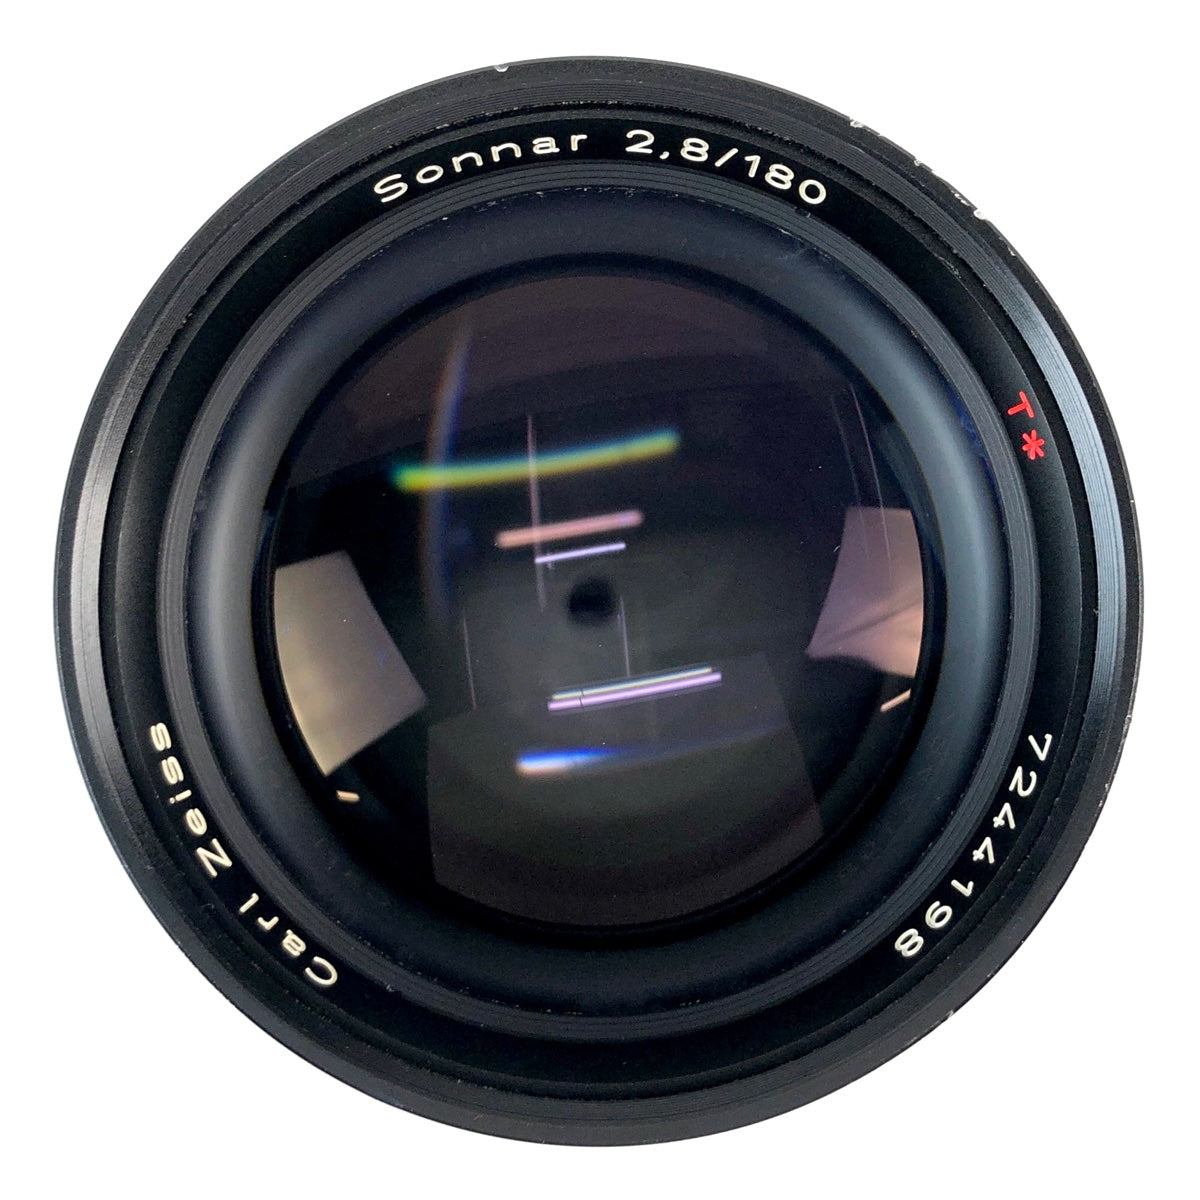 コンタックス CONTAX RX ＋ Sonnar T* 180mm F2.8 MMJ フィルム マニュアルフォーカス 一眼レフカメラ 【中古】